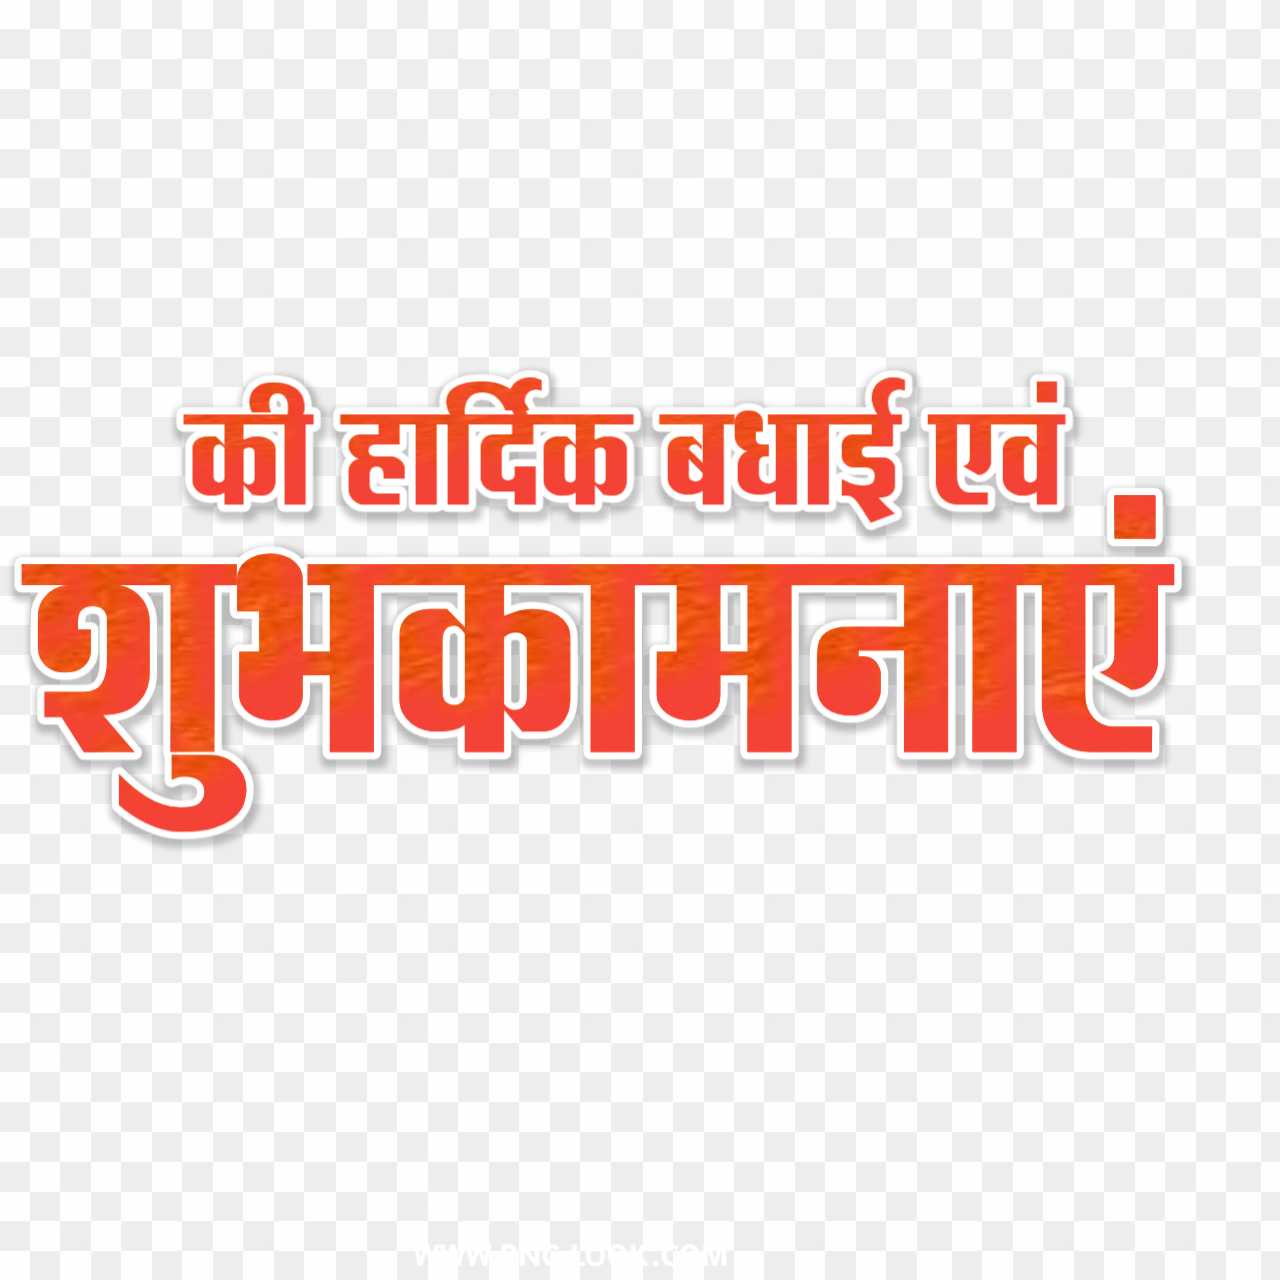 Shubhkamnaen Hindi stylish text png image download 